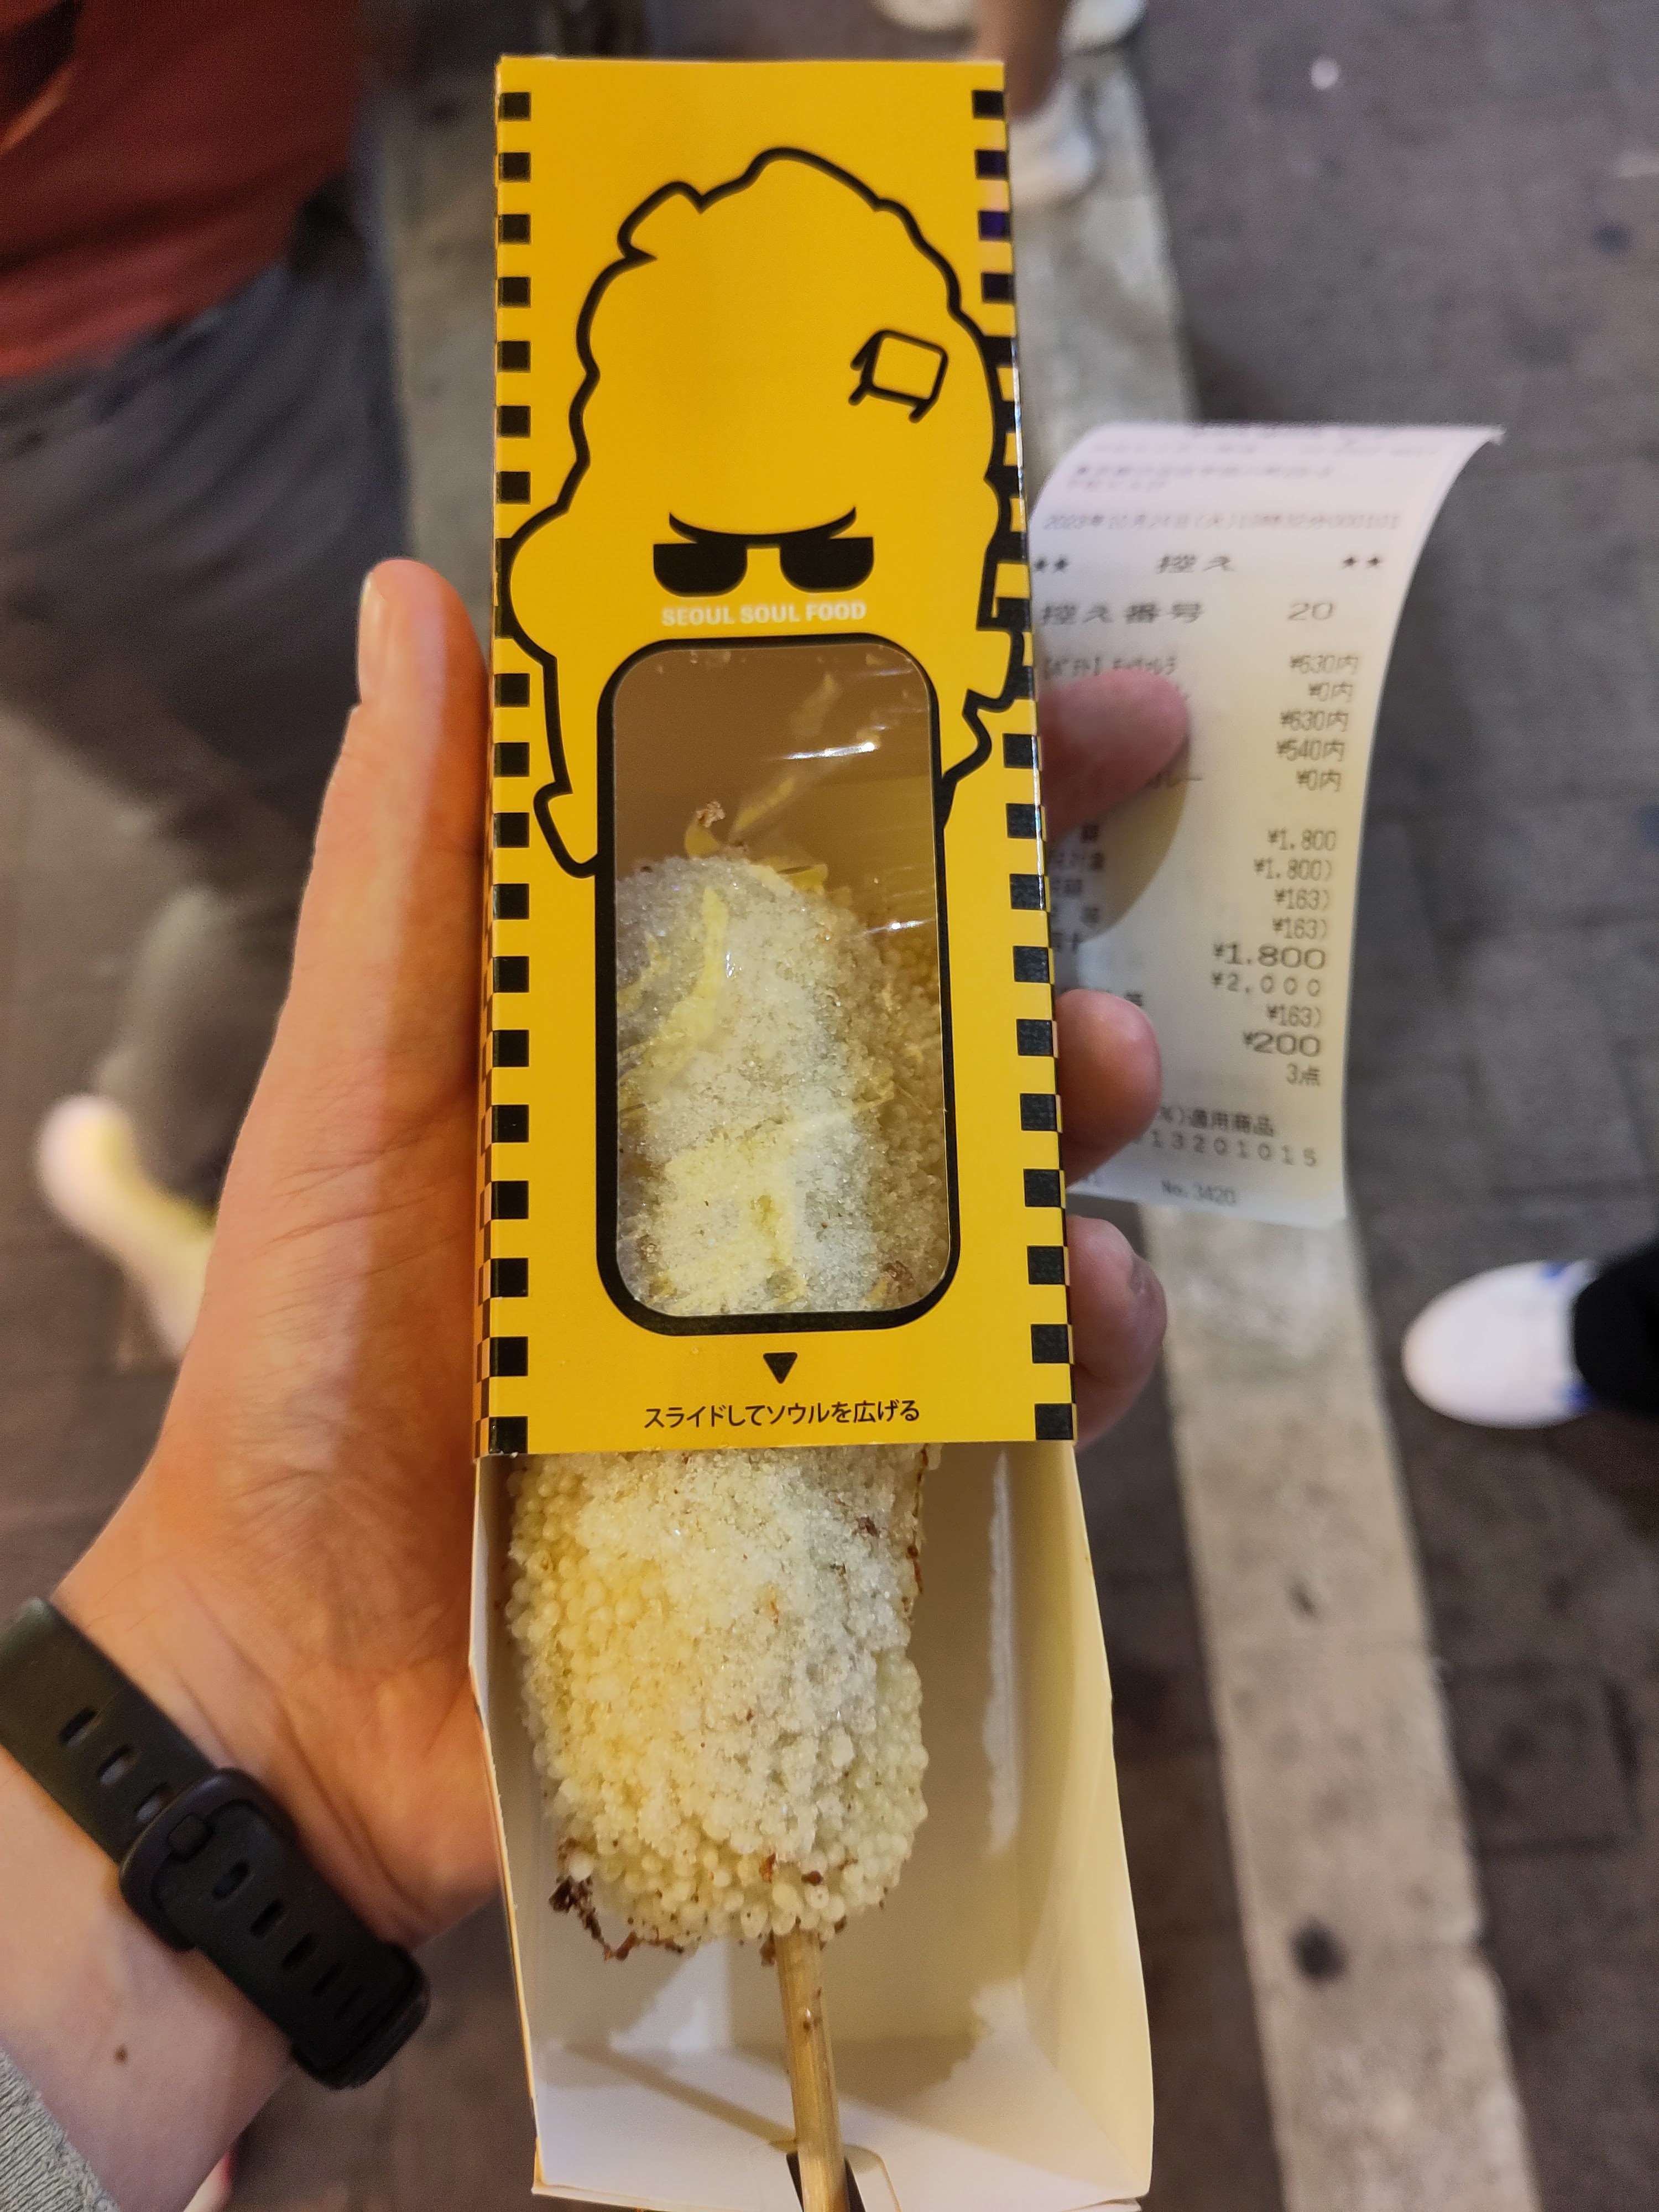 Koreanischer Corn Dog mit Zucker umhüllt in einer gelben Verpackung.  